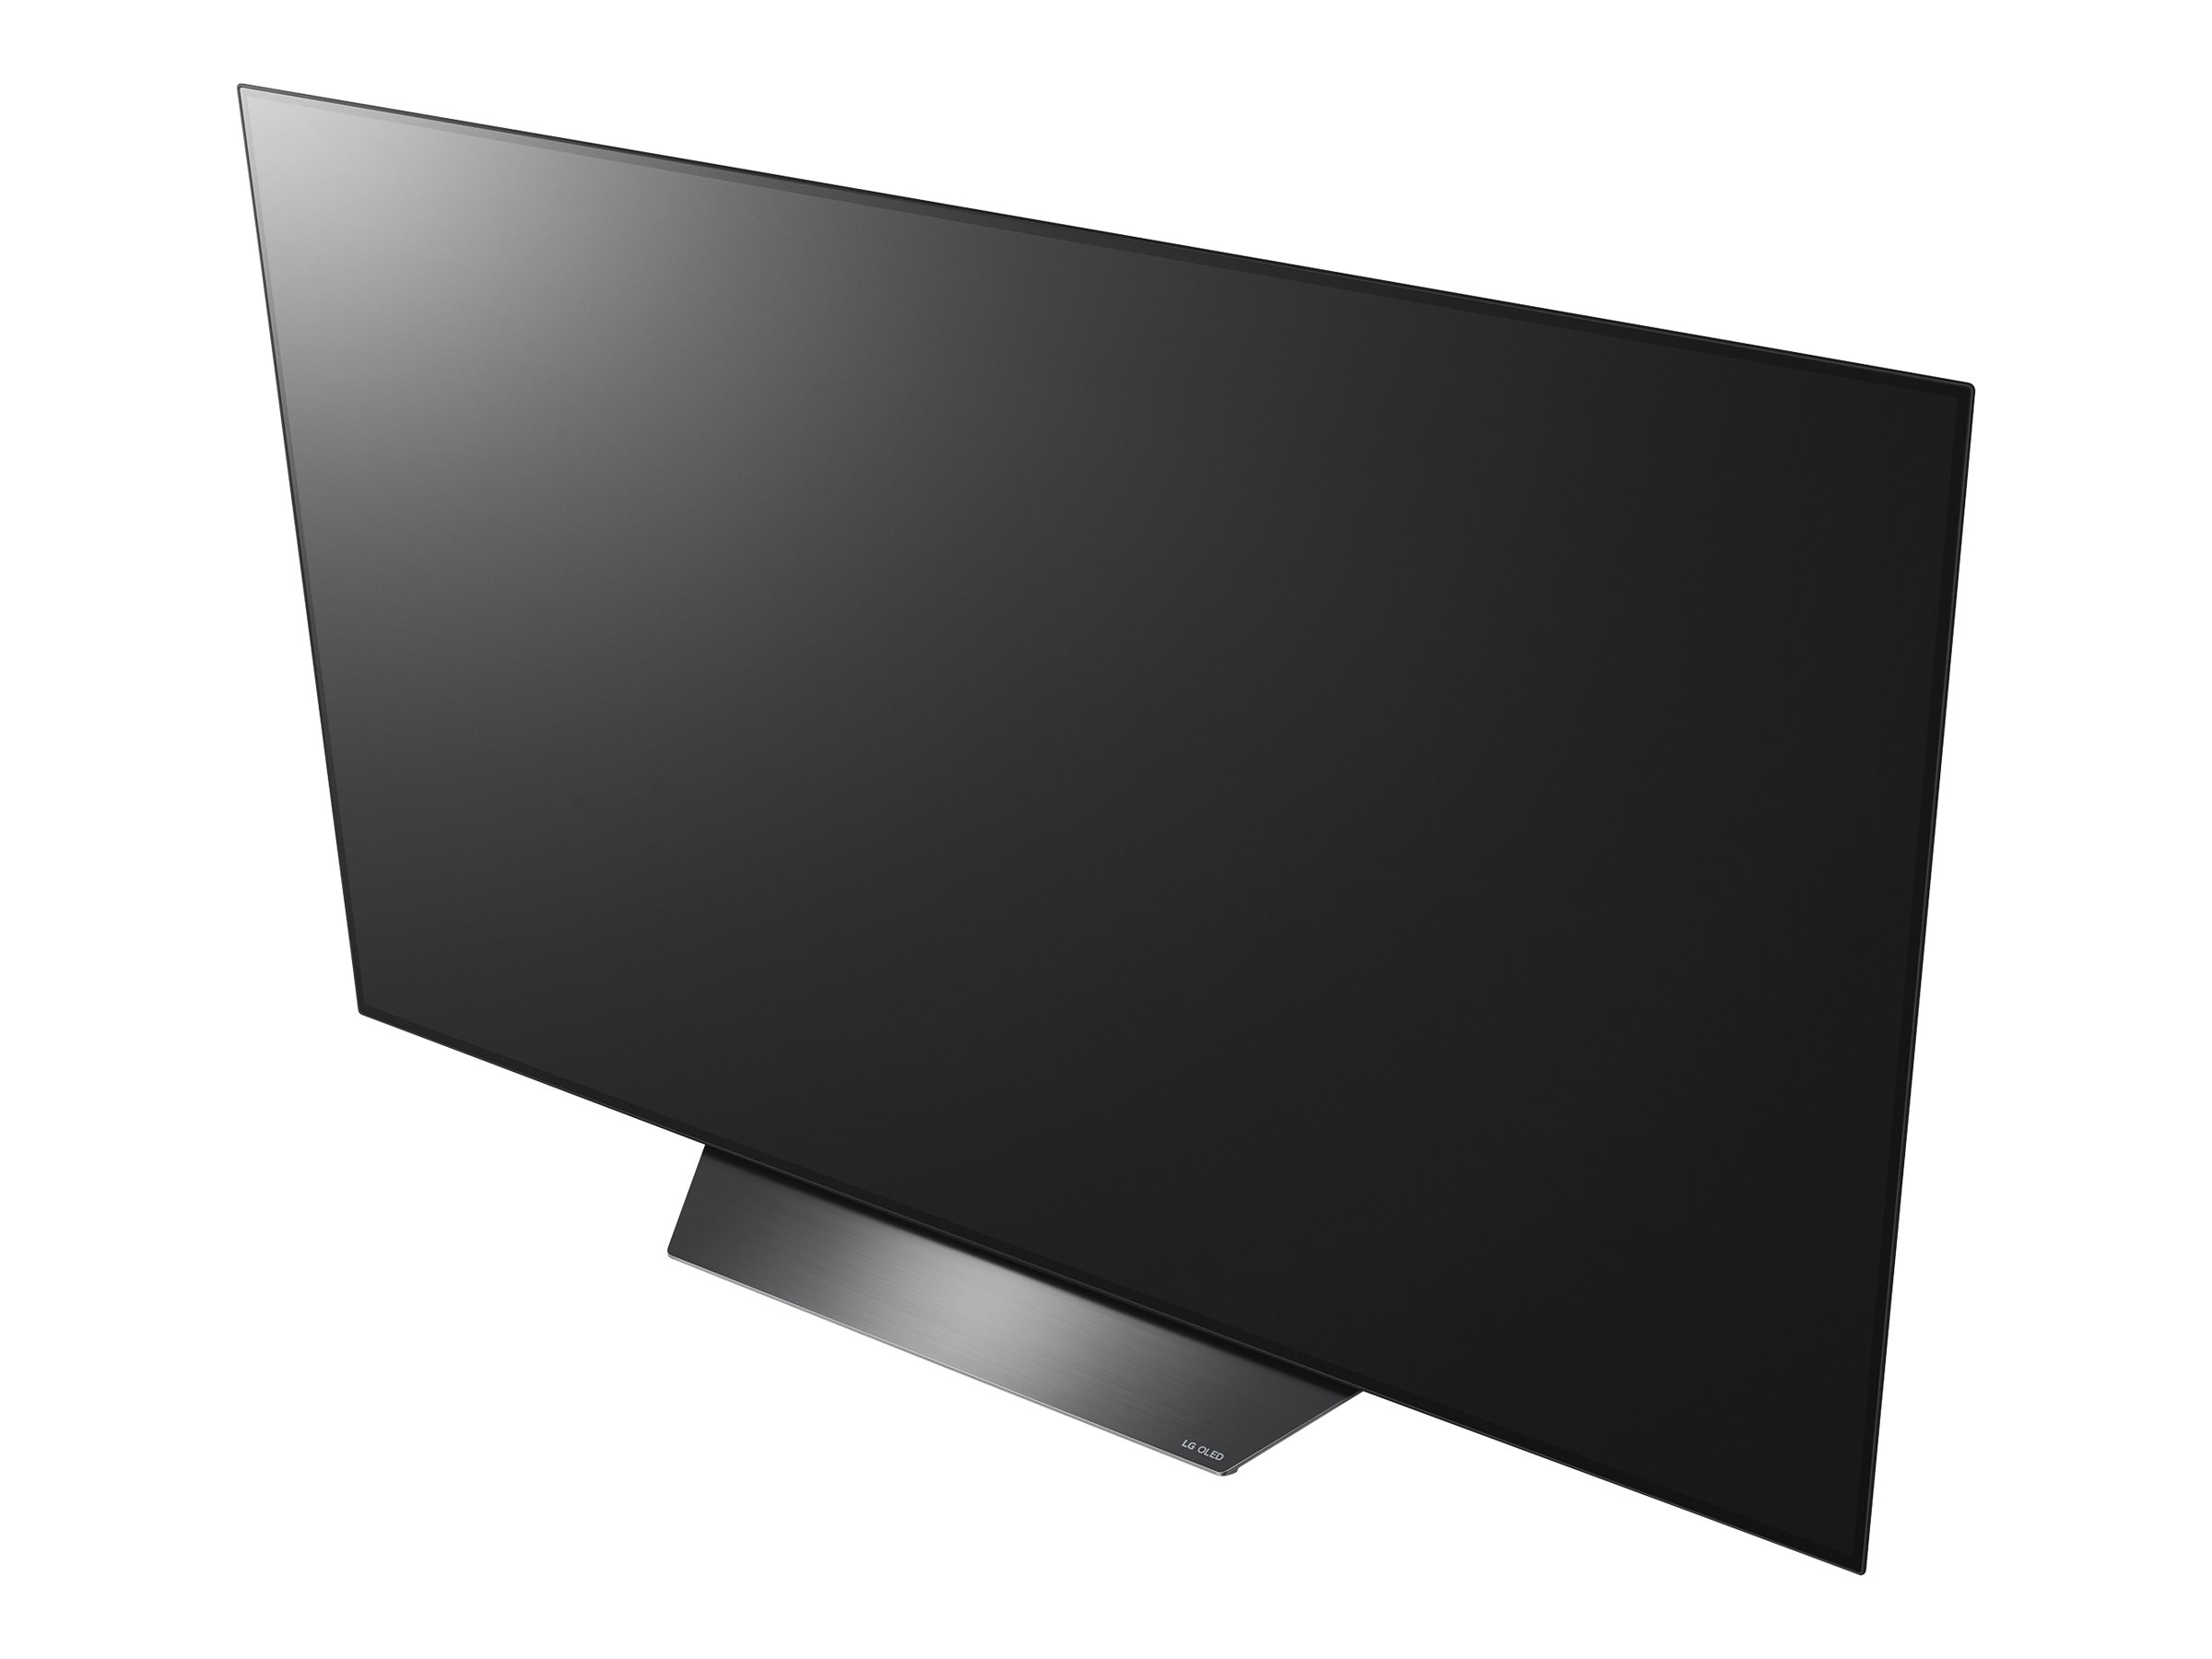 LG 65" Class OLED B8 Series 4K (2160P) Smart Ultra HD HDR TV - OLED65B8PUA - image 2 of 13